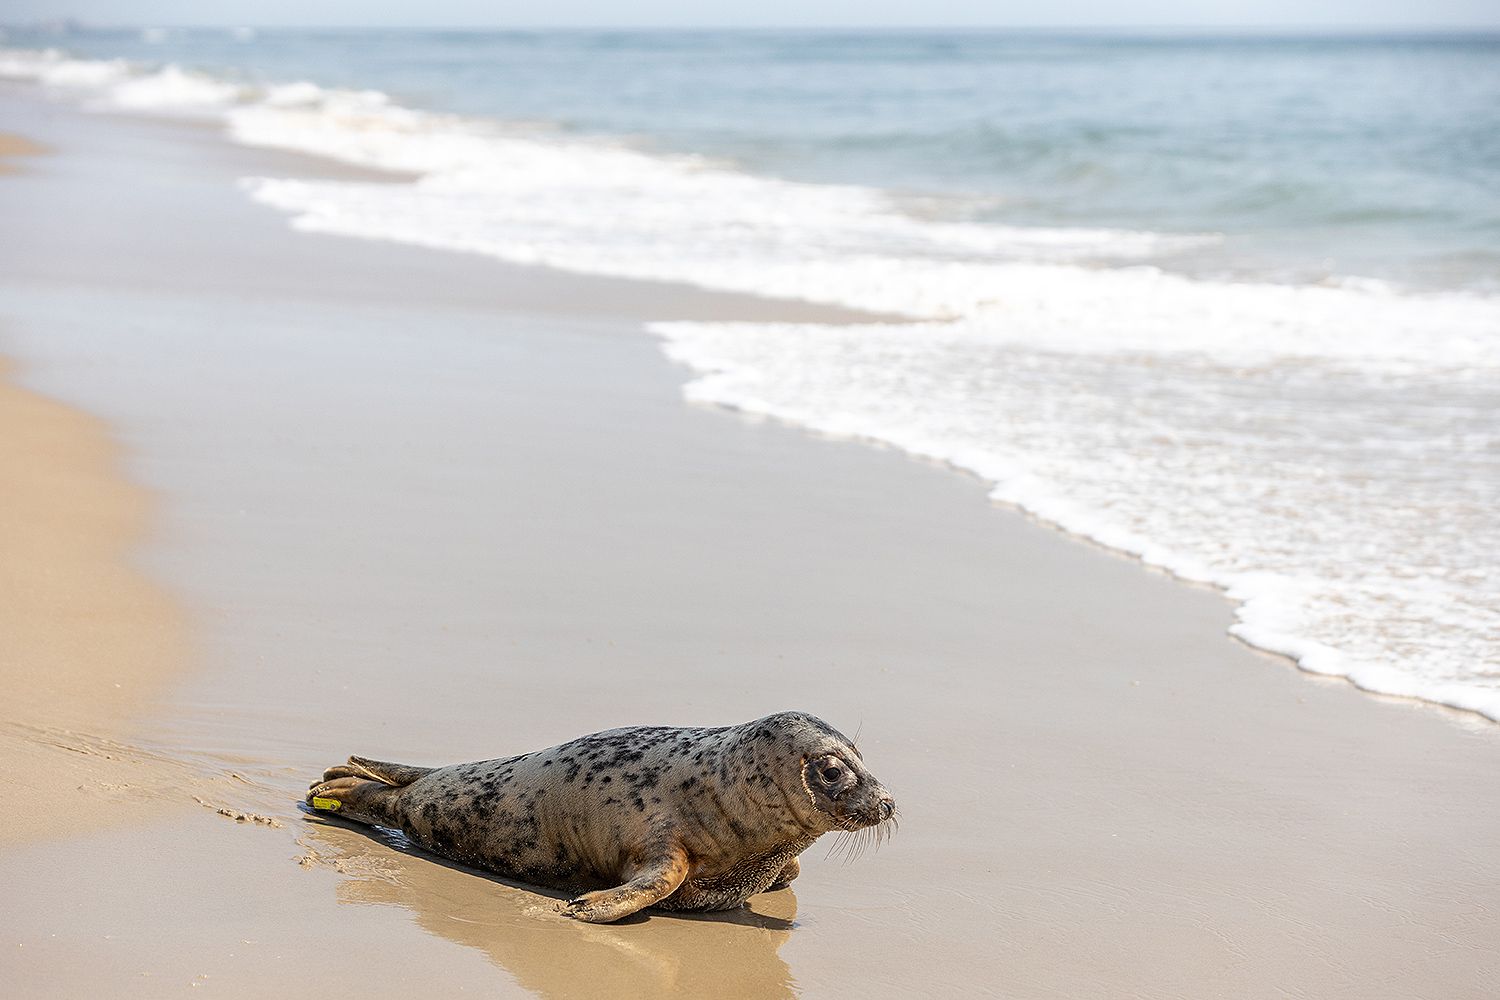 Rehabbed seal Eloise released